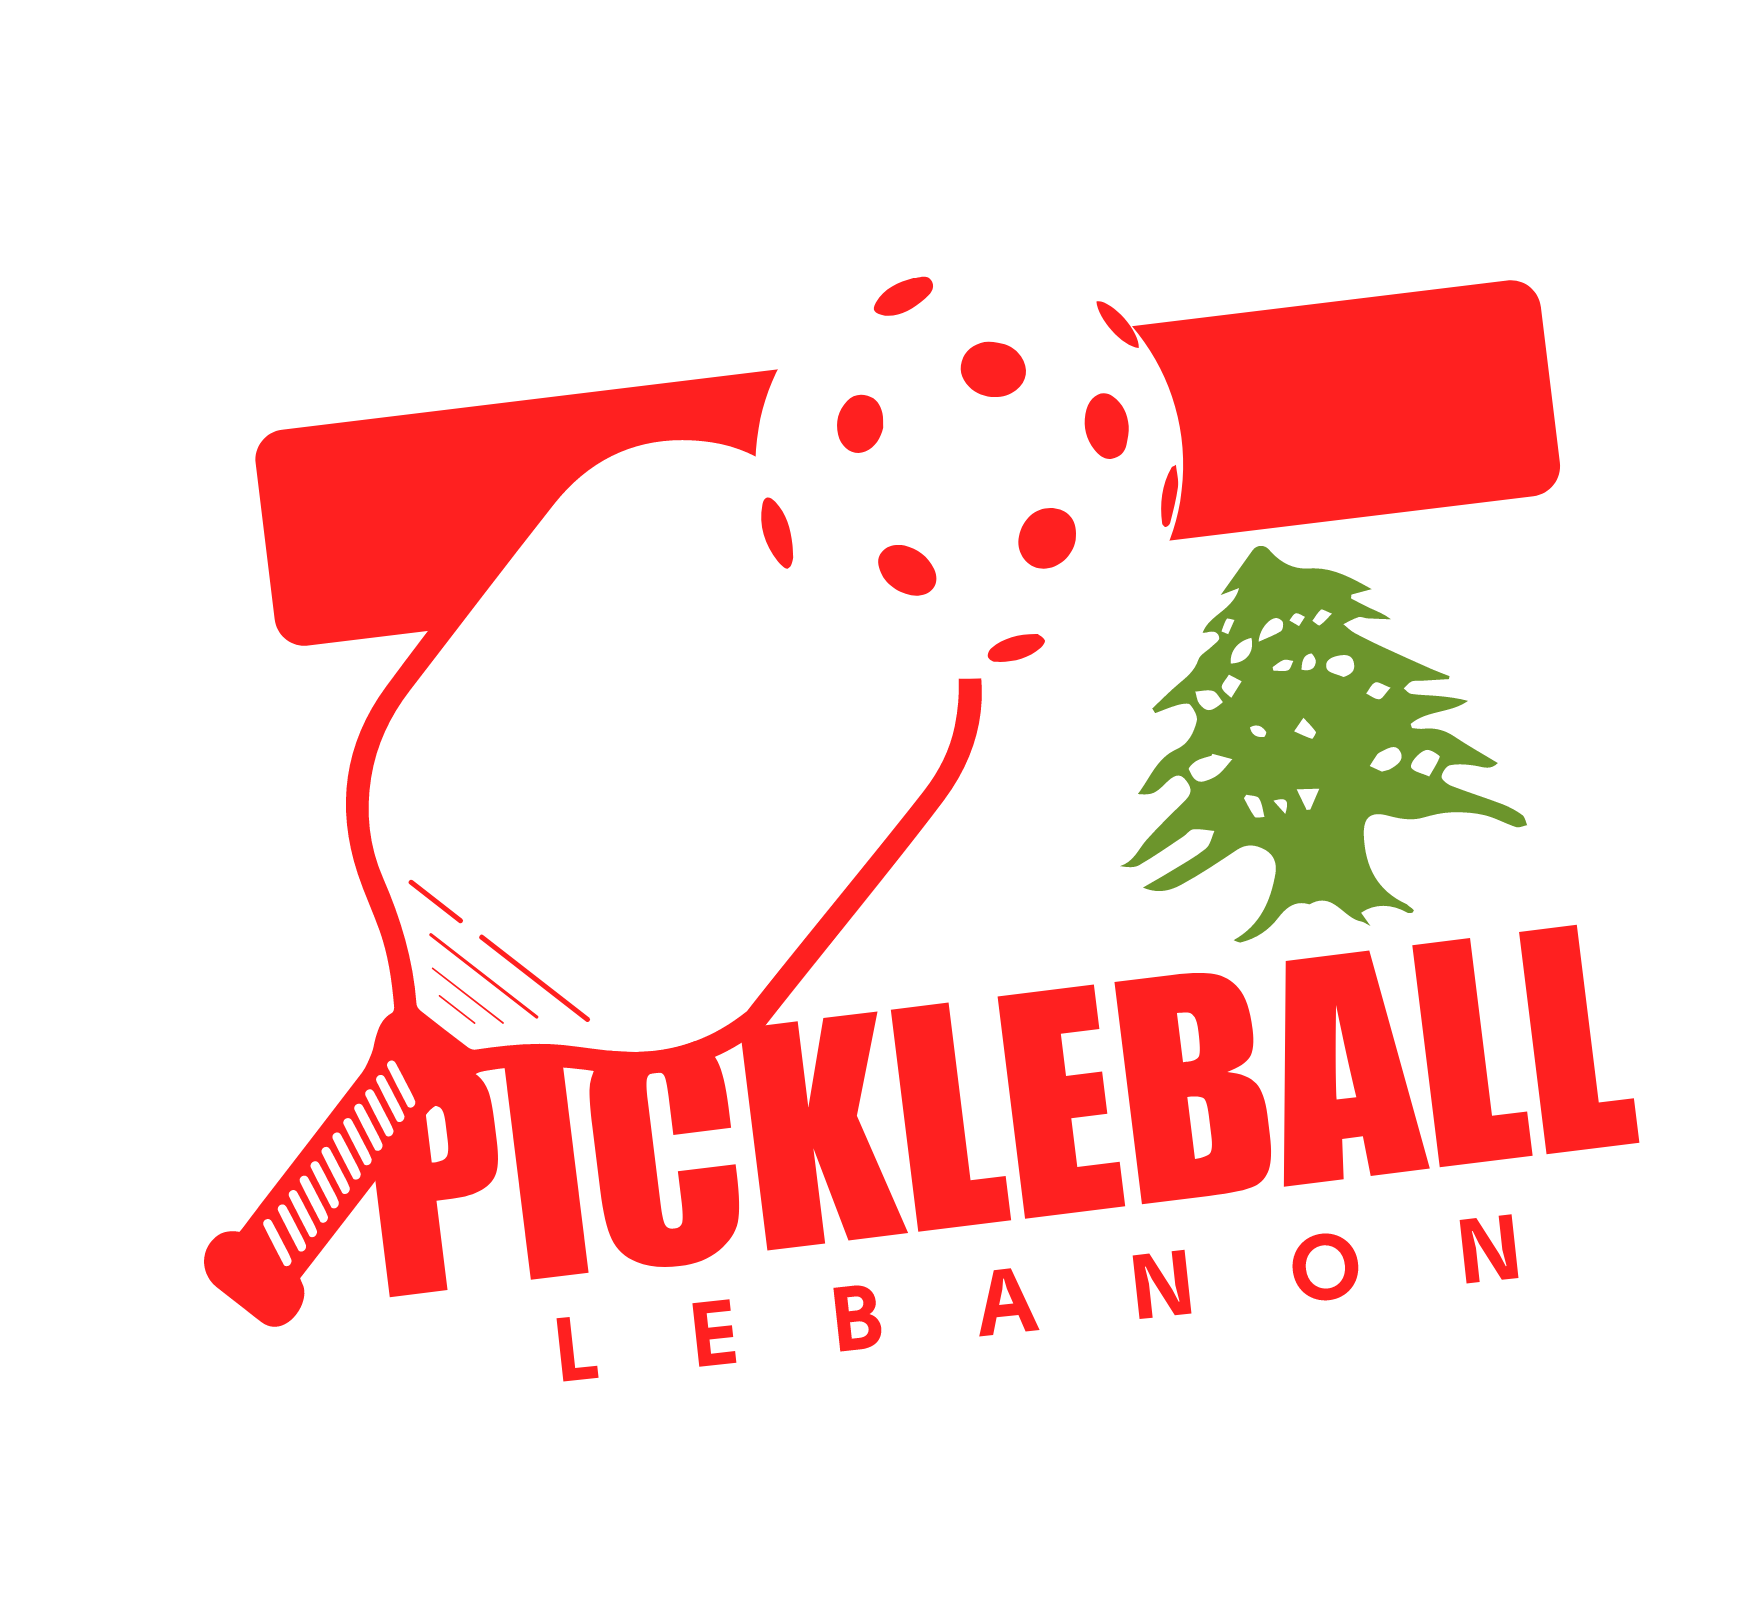 Lebanon Pickleball Association logo